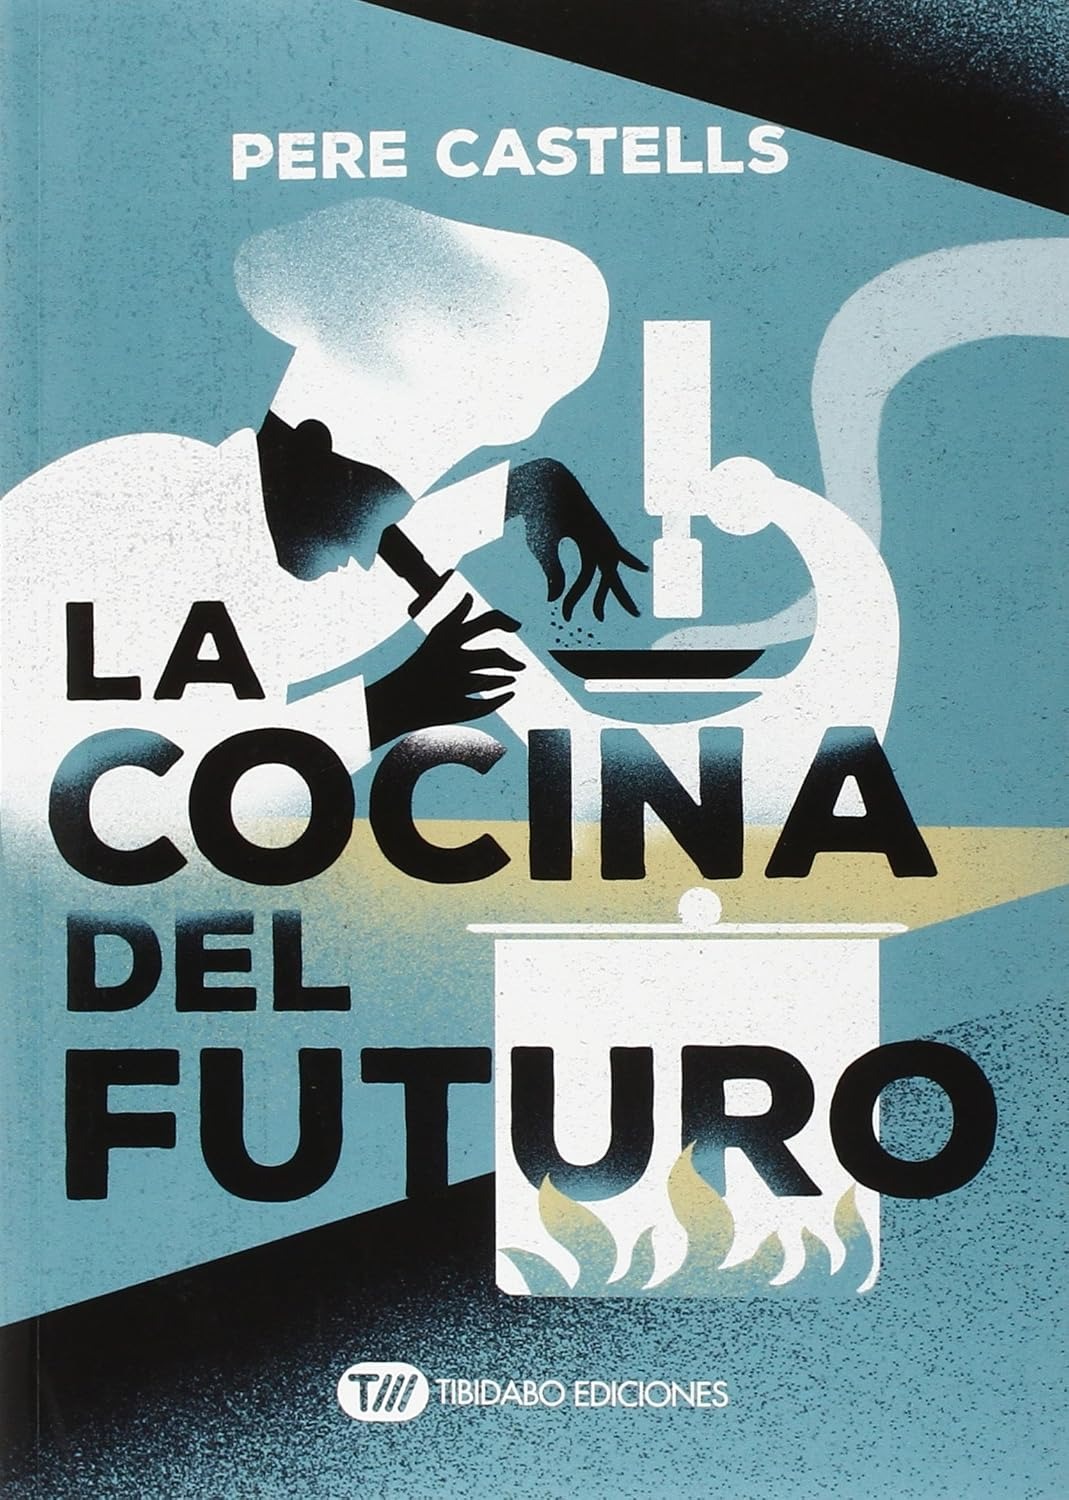 La cocina del futuro: Cocina, ciencia y salud